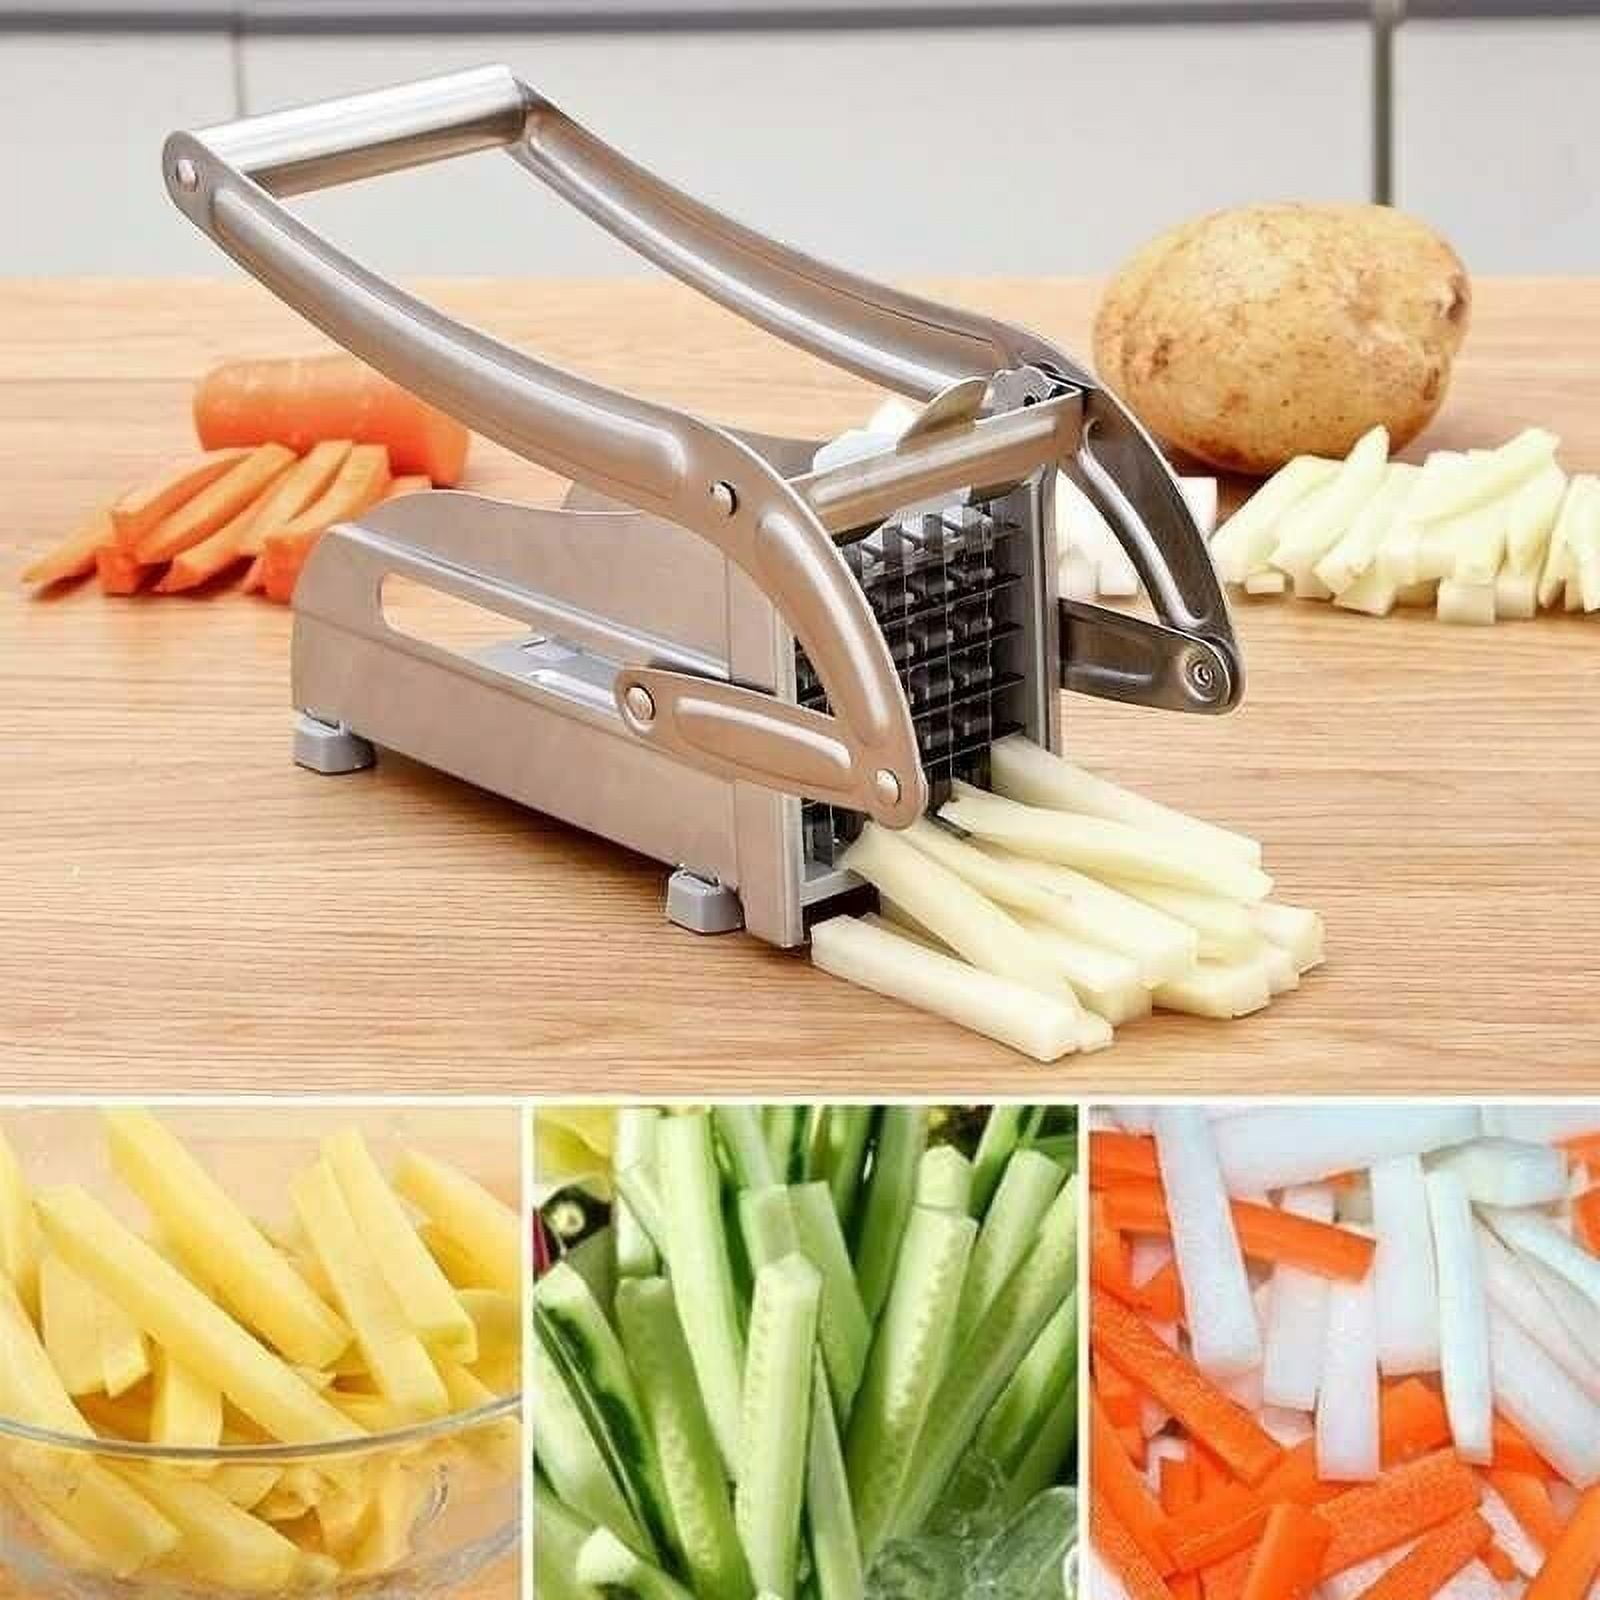 Cortador de frutas y verduras comercial VEVOR, cortador de cebolla